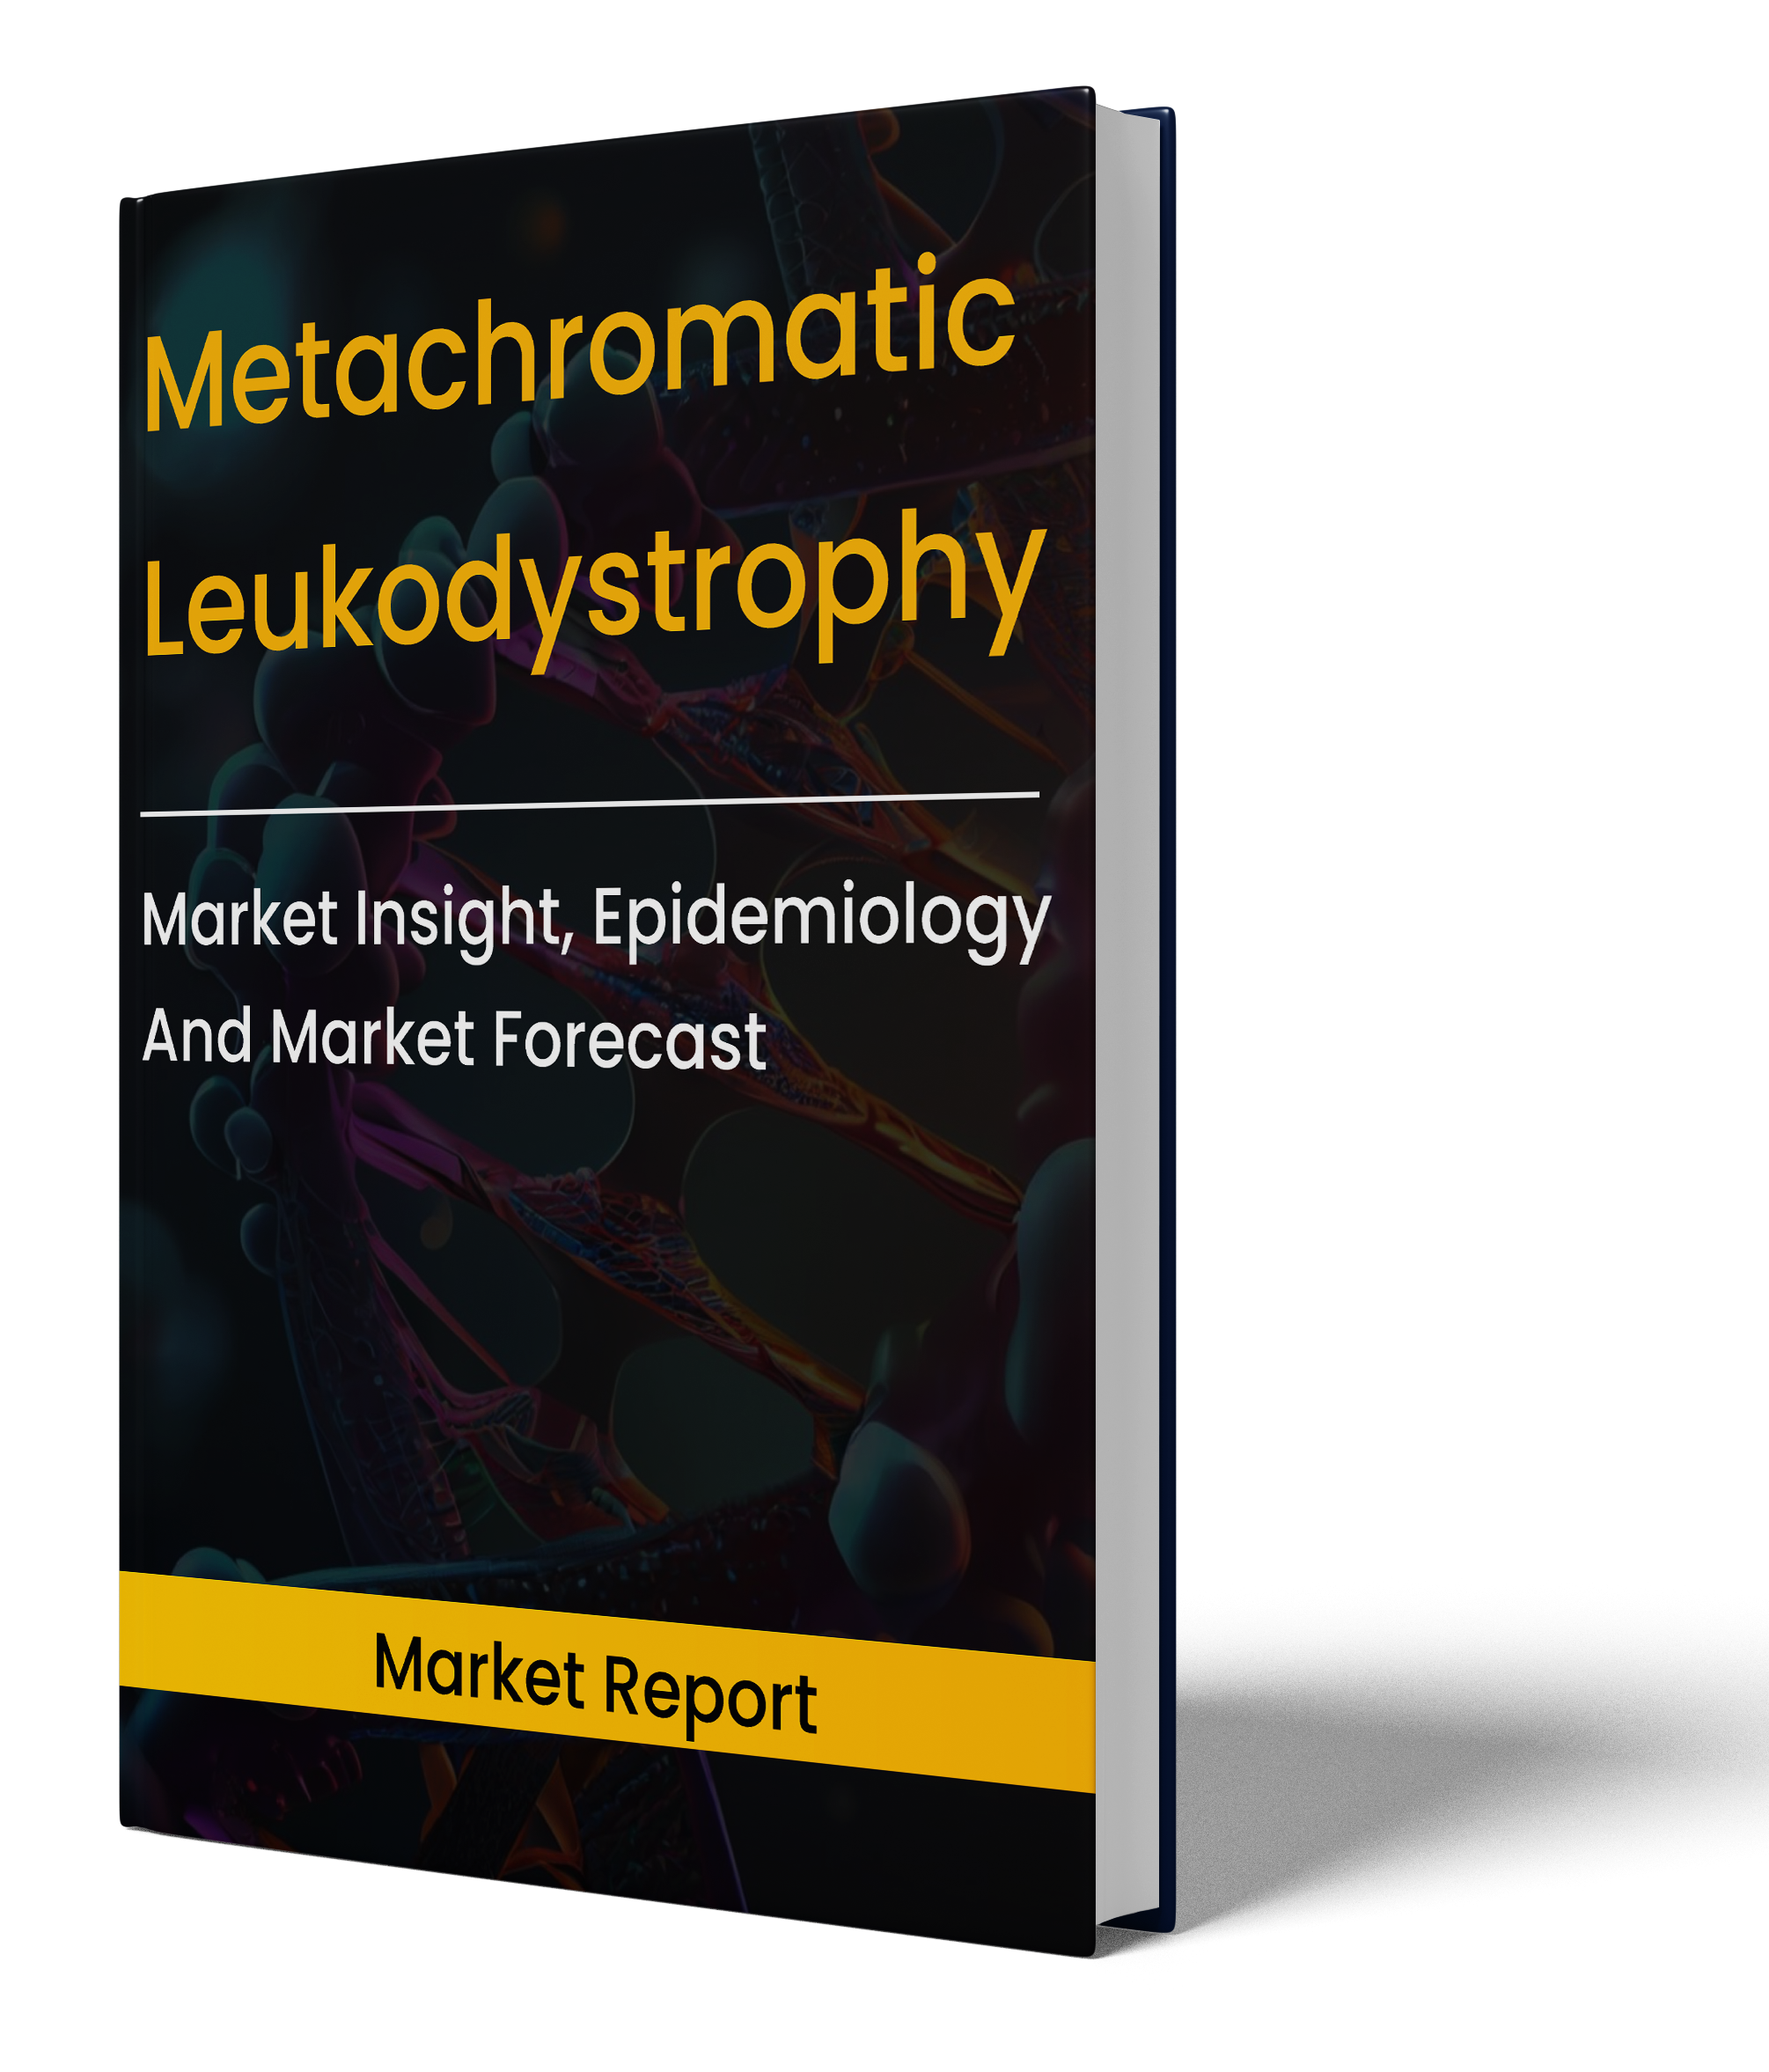 Metachromatic Leukodystrophy market report